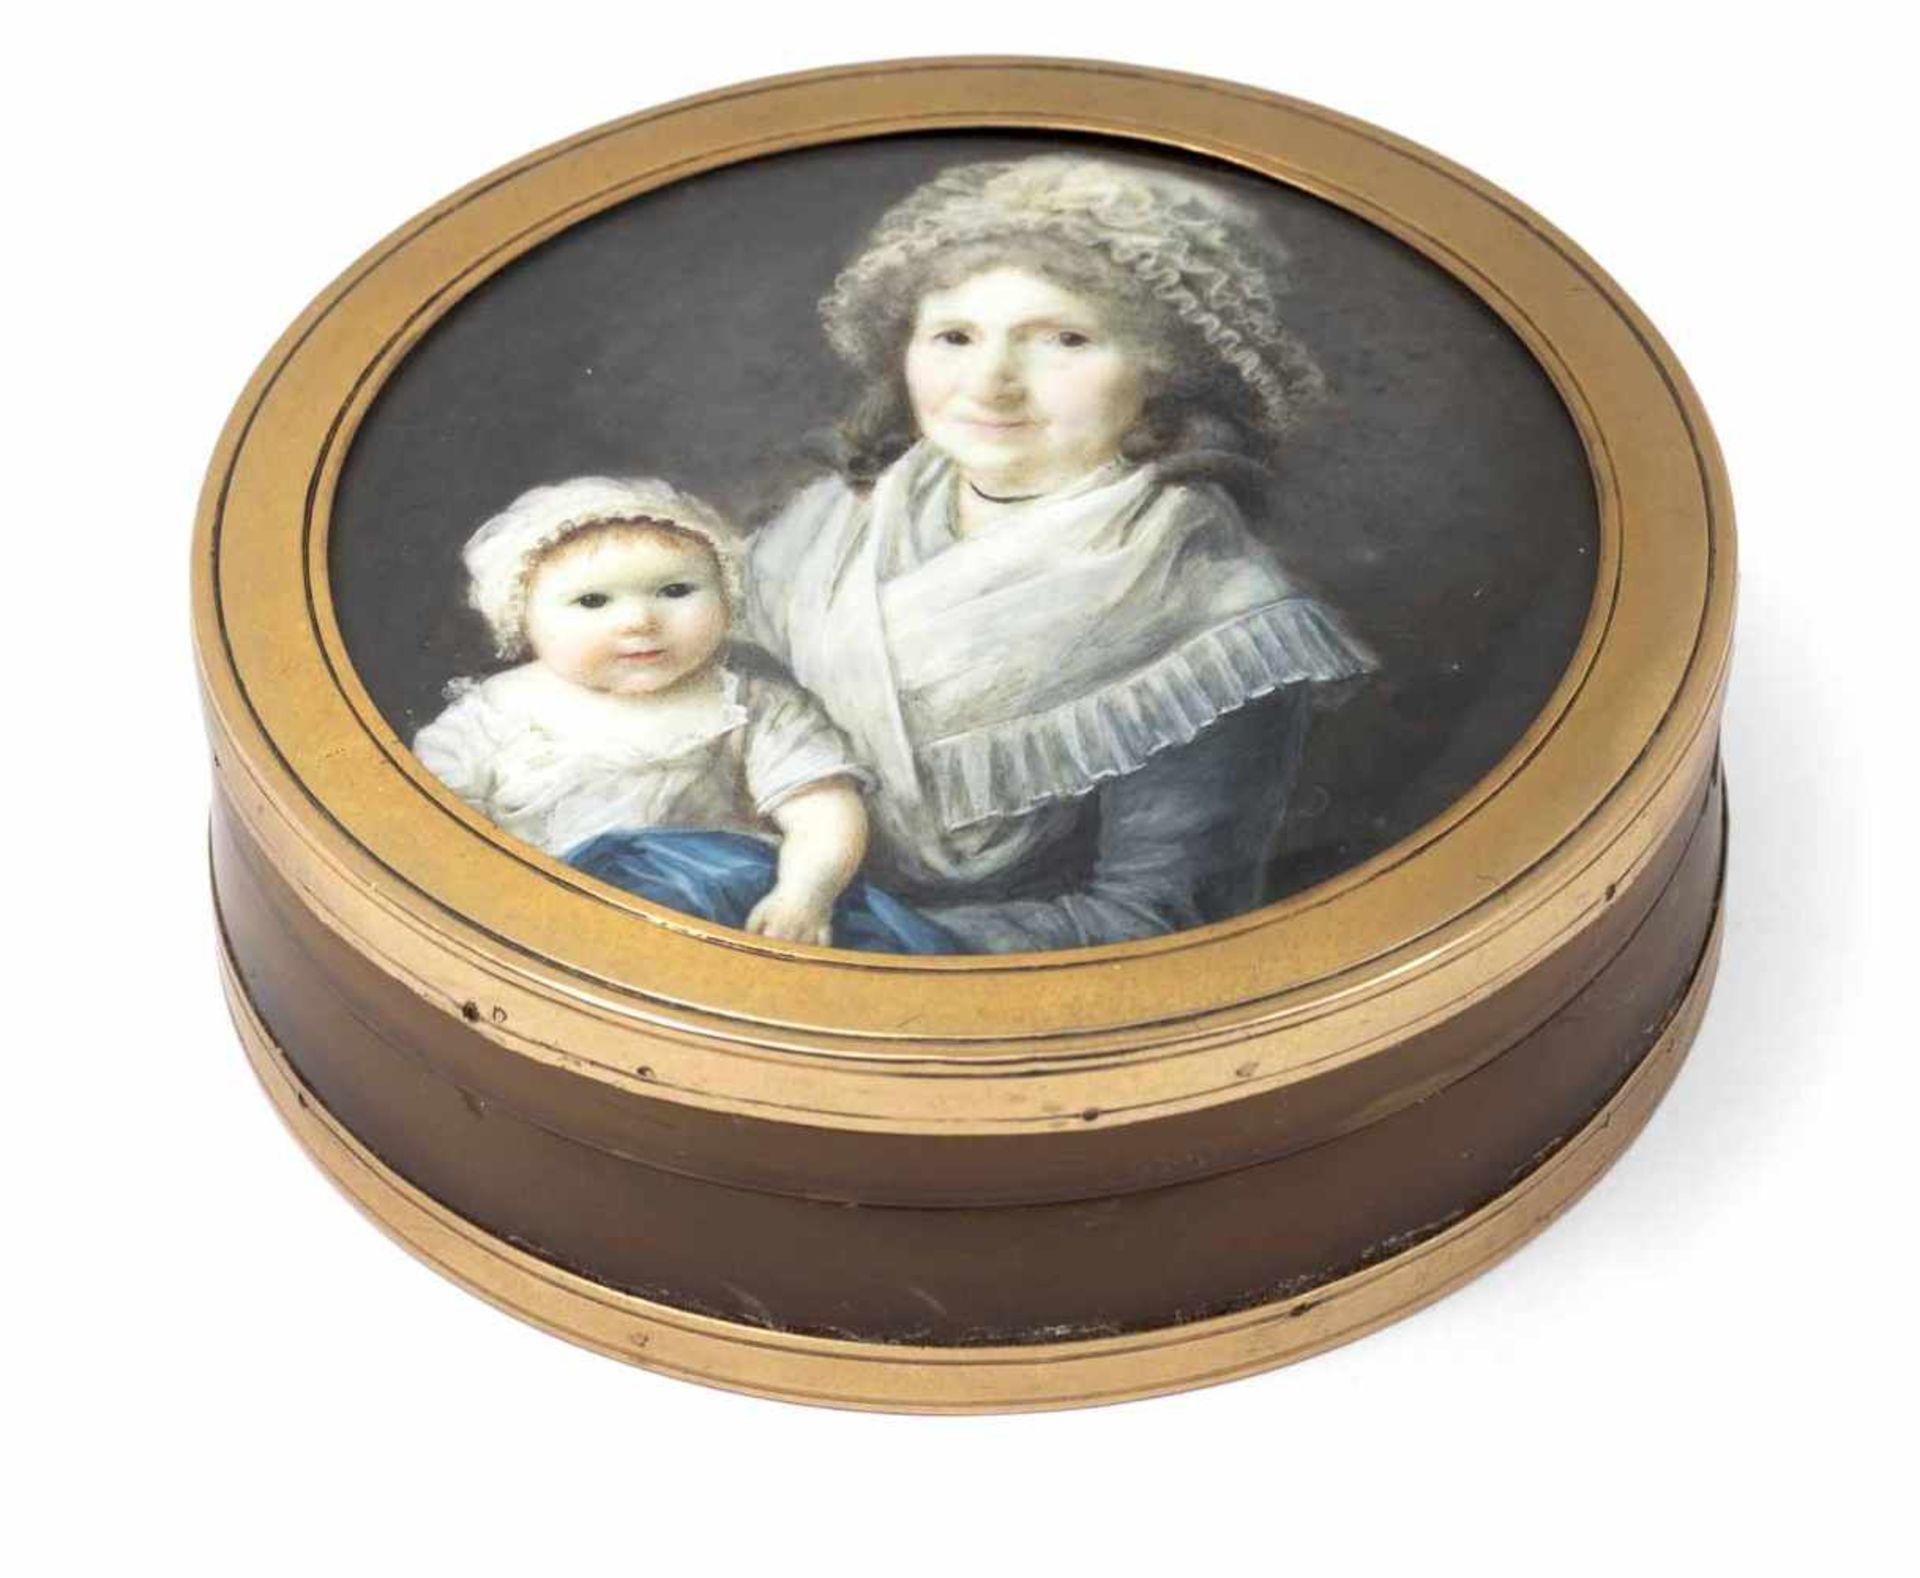 Dubois, FrédericFrankreich, tätig 1780-1819D. 6,1/7,5 cmGroßmutter und ihr Enkelkind. Die Dame mit - Image 2 of 2